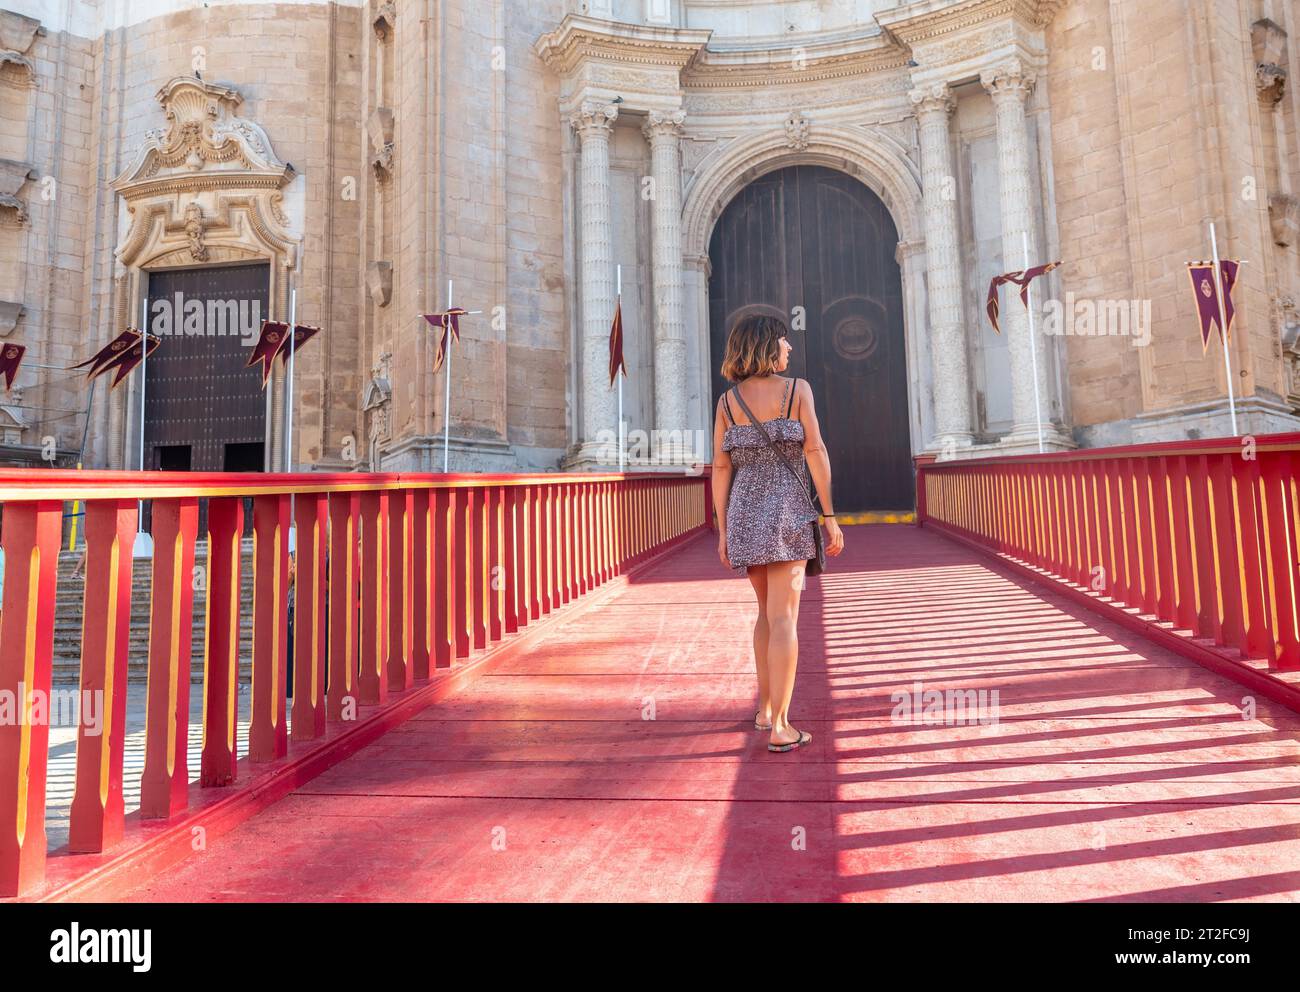 Un jeune touriste sur le tapis rouge de la Santa Iglesia Catedral dans la ville de Cadix. Andalousie Banque D'Images